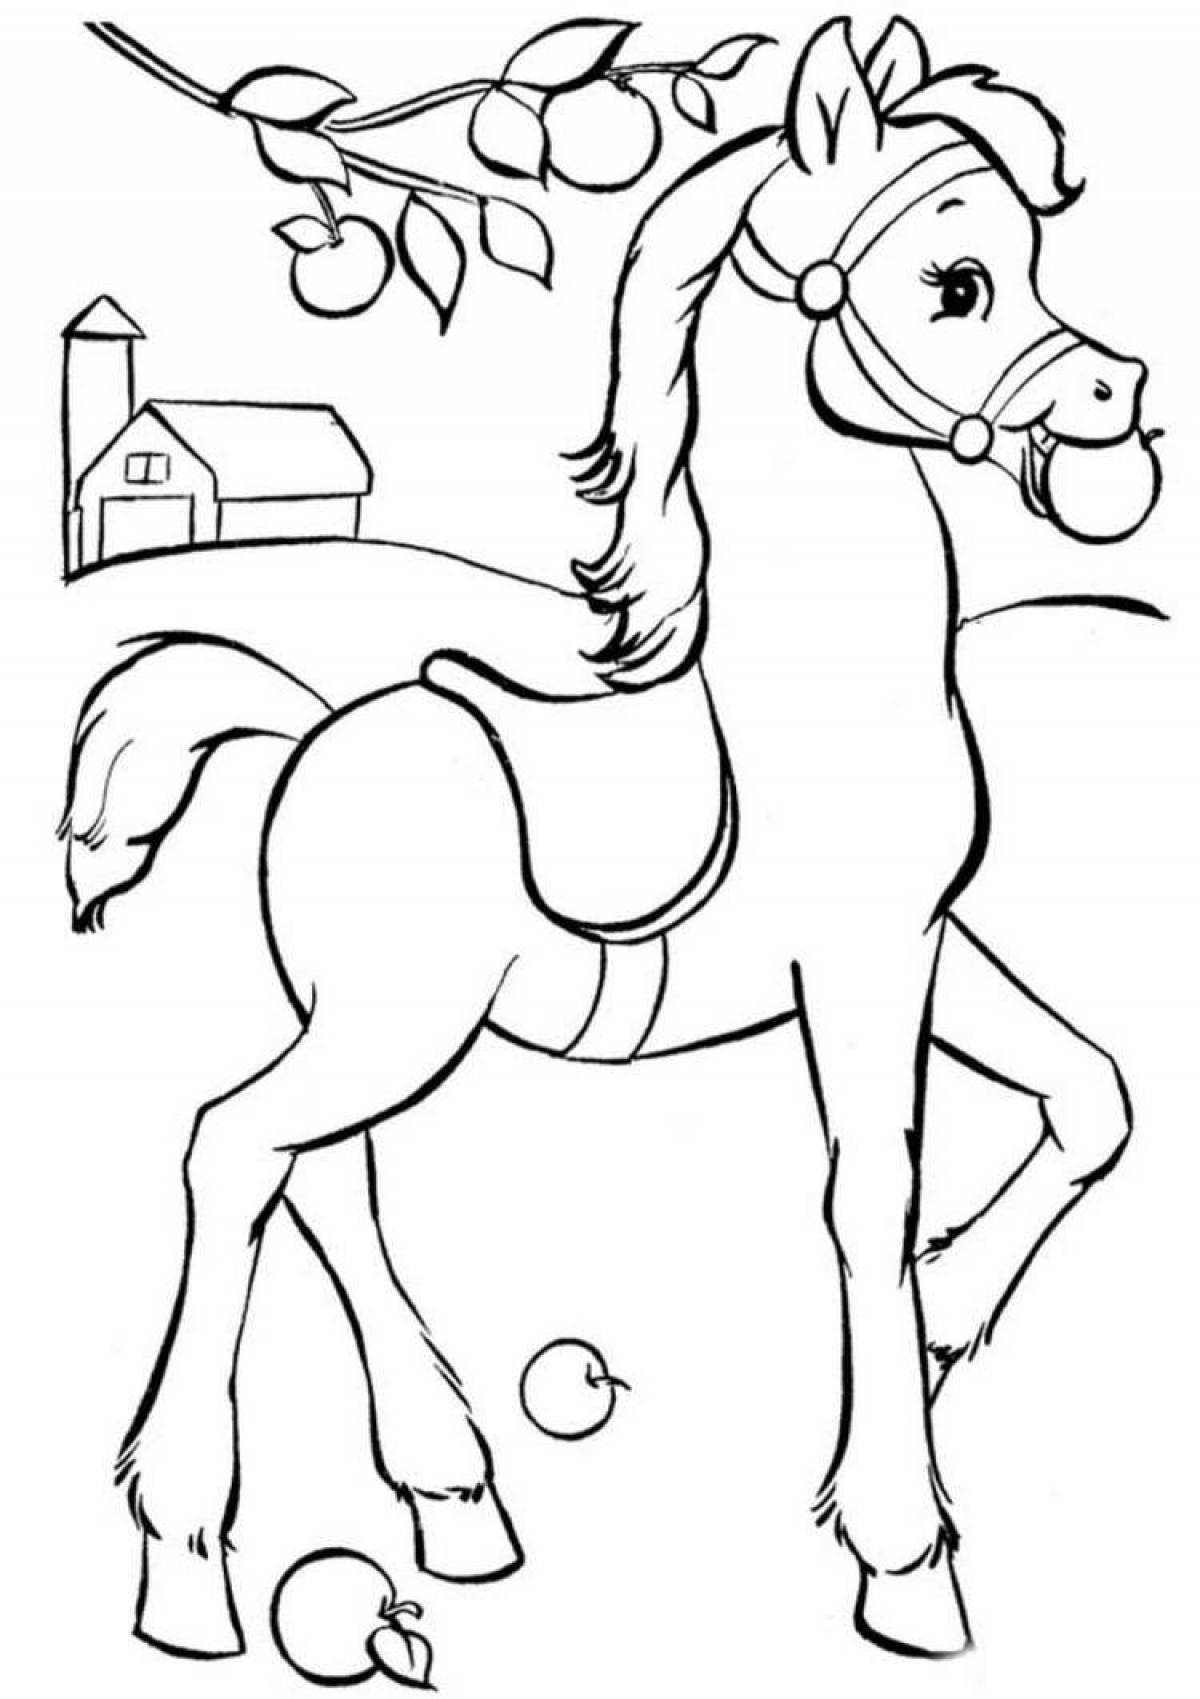 Раскрашиваем лошадку. Раскраска. Лошадка. Лошадка раскраска для детей. Раскраска конь. Раскраски лошадки для девочек.